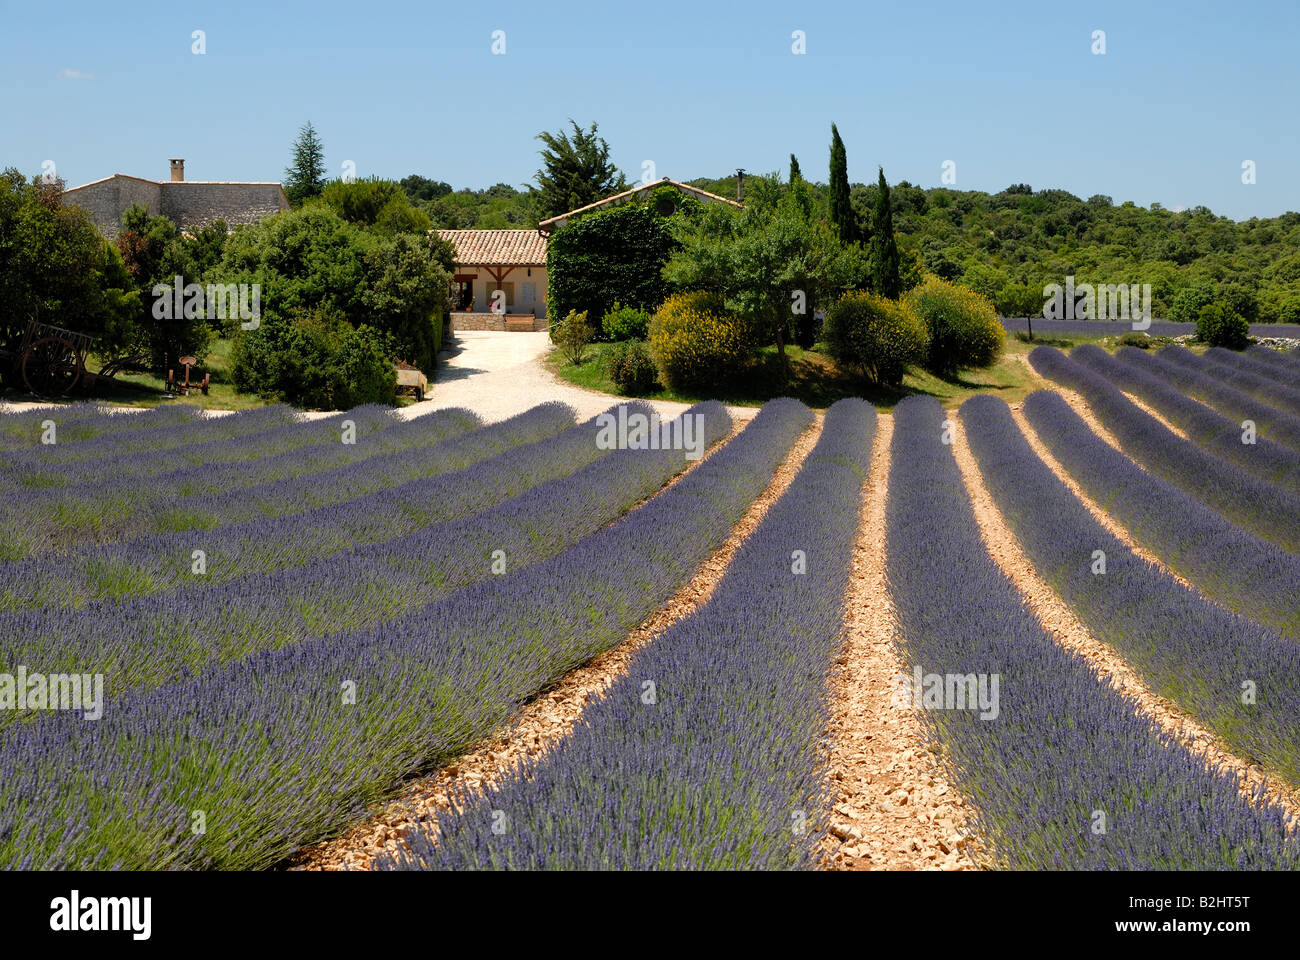 Ferme et champ de lavande en Provence, France Banque D'Images